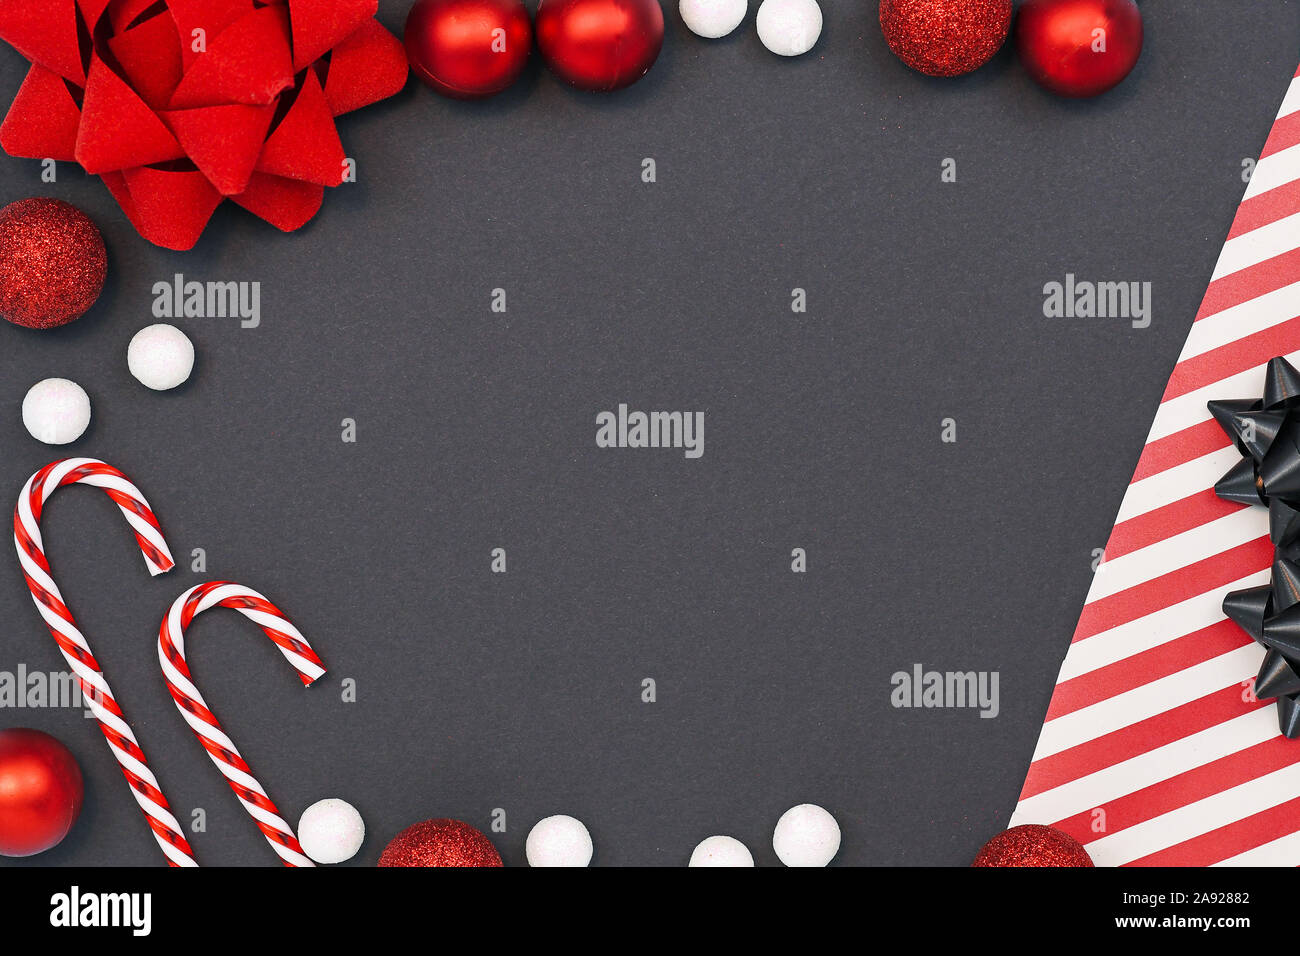 Elegante saisonale flach Hintergrund mit gestreiftem Geschenkpapier, Zuckerstangen, weißer Schnee Kugeln, red ribbon und Christbaumschmuck Kugeln o Stockfoto